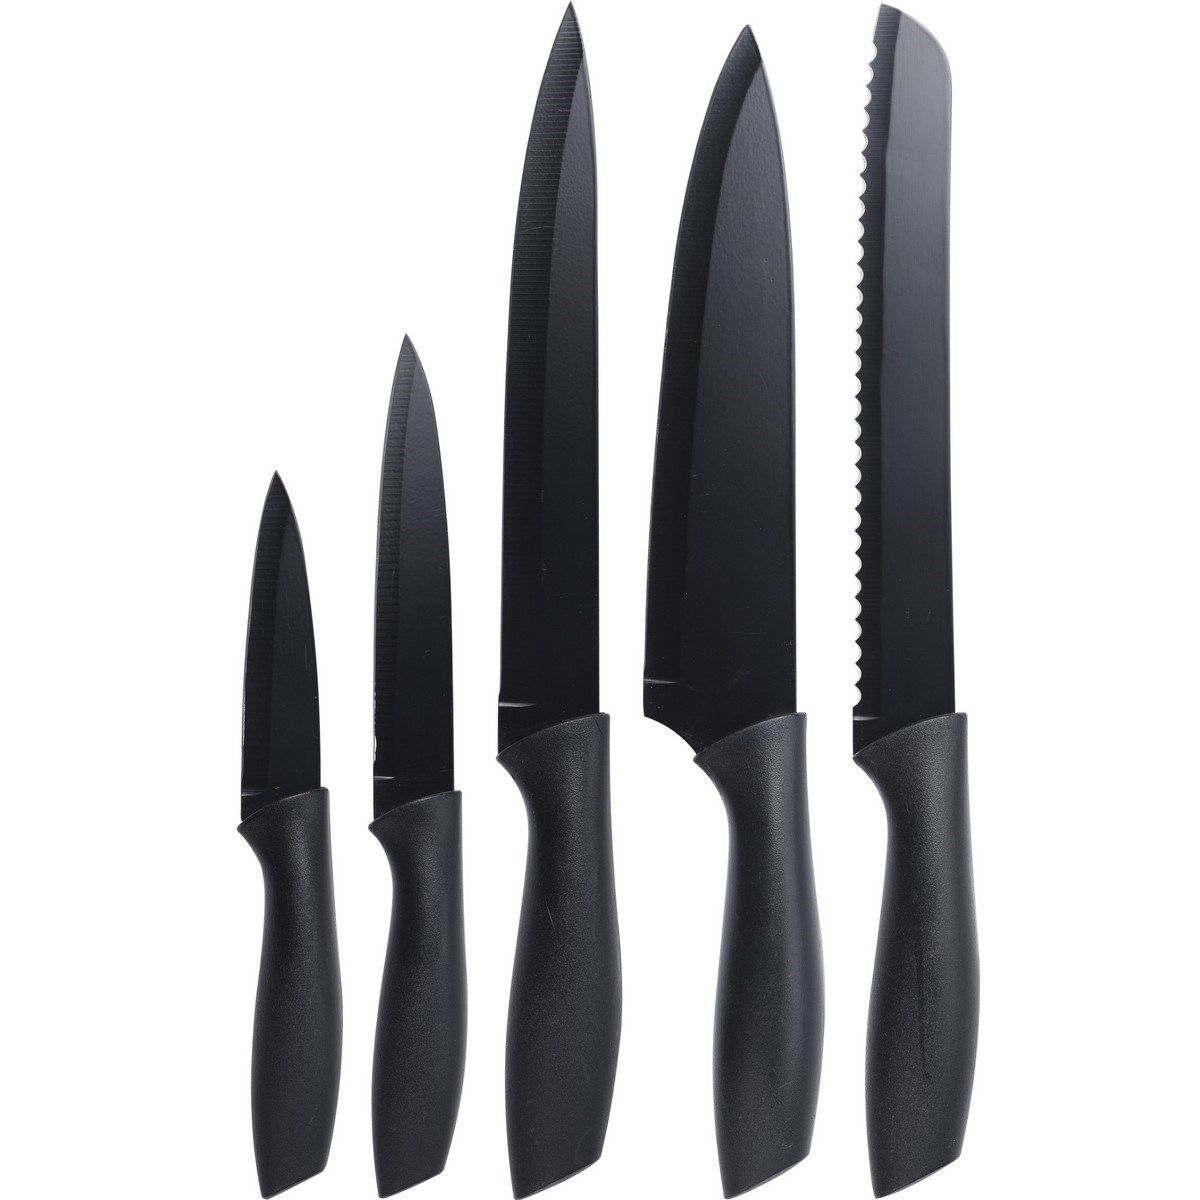 EH Excellent Houseware Černé nože z nerezové oceli 5 ks, sada kuchyňských nožů s unikátním designem - EMAKO.CZ s.r.o.